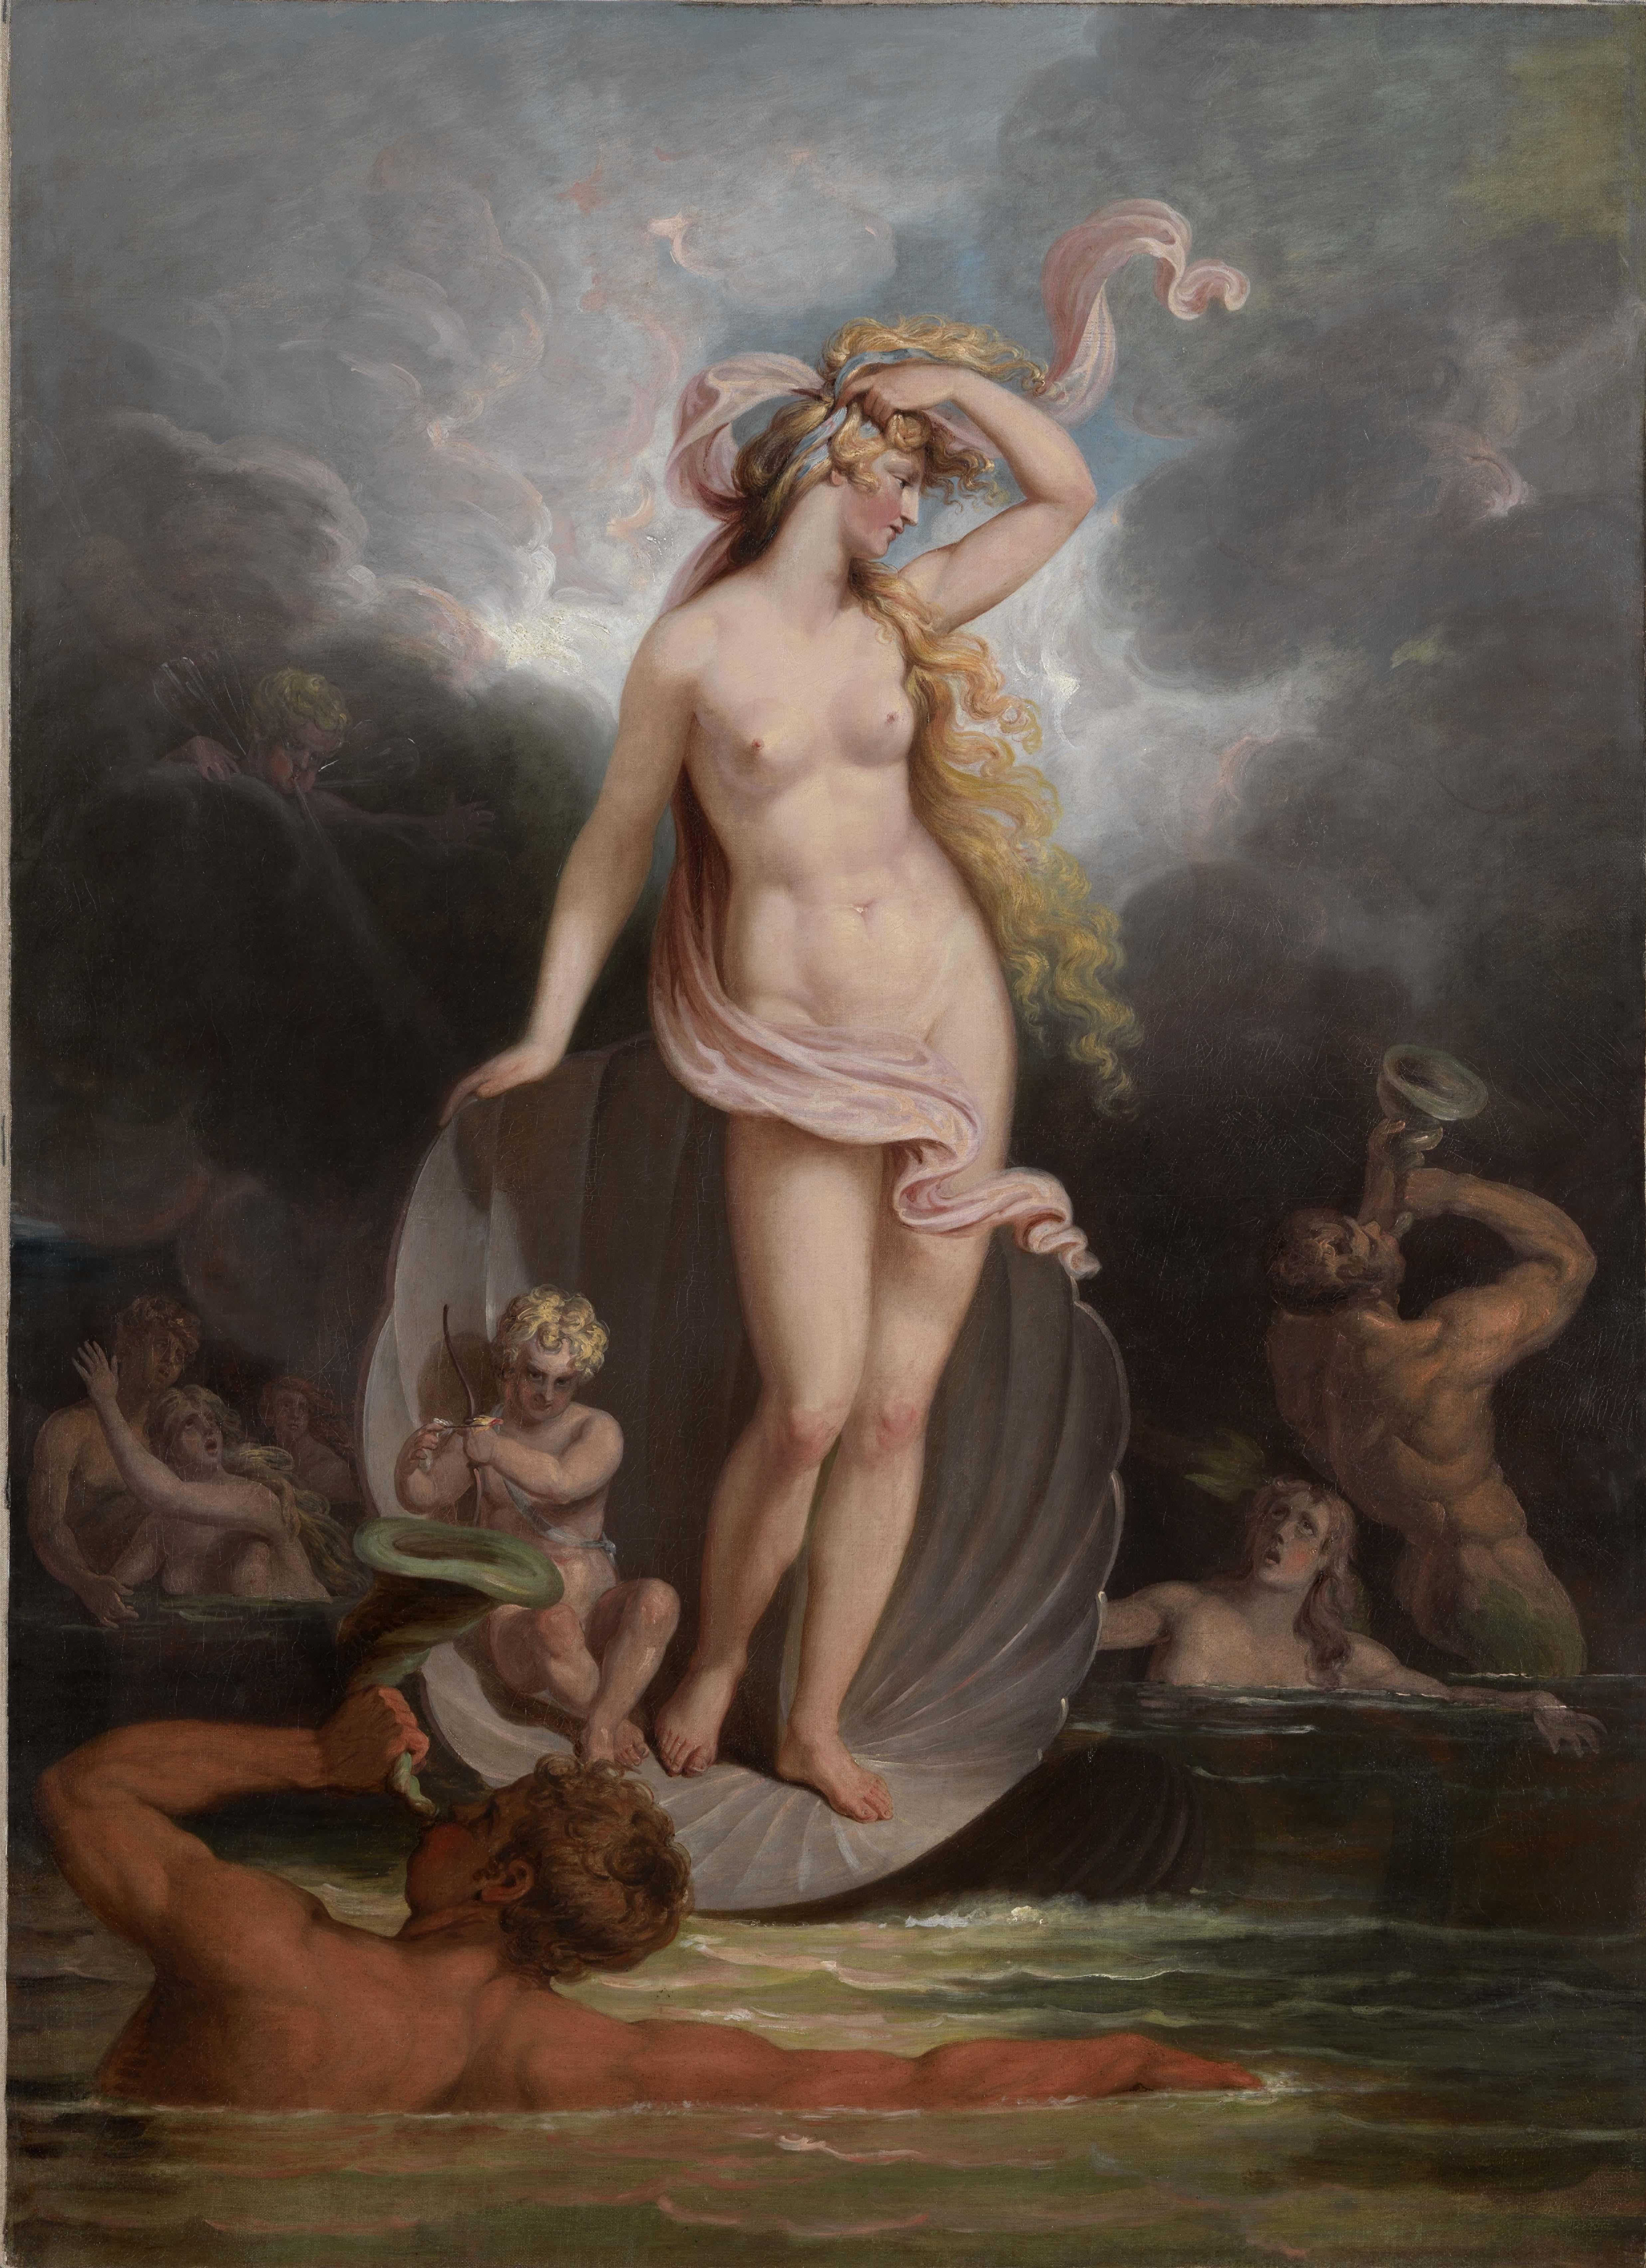 Allegorisches Gemälde des 18. Jahrhunderts, „Der Triumph der Schönheit“ – Painting von Edward Dayes